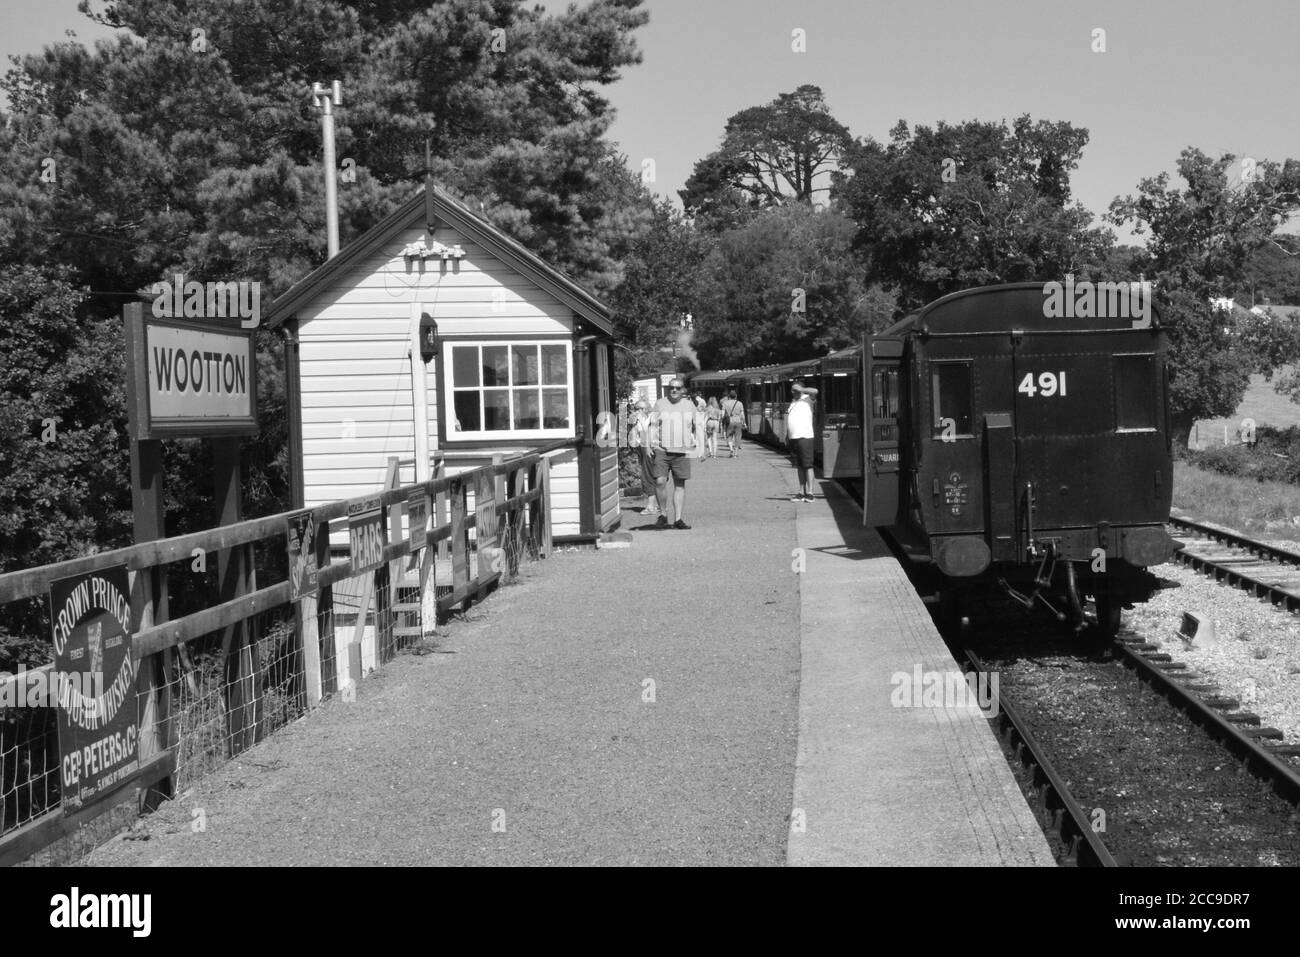 Busse am Bahnhof Wootton auf der Isle of Wight. Stockfoto